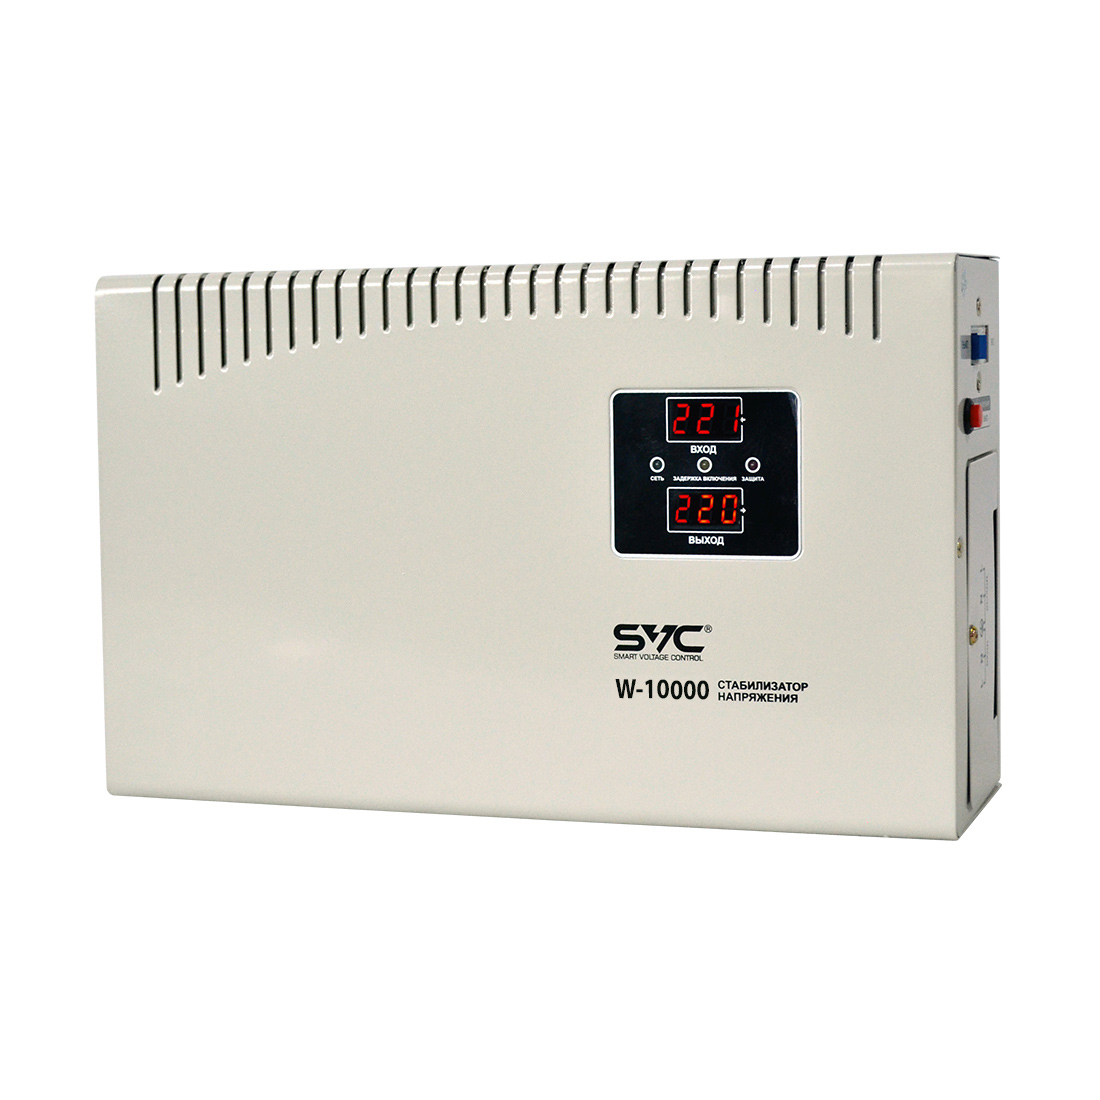 Стабилизатор (AVR), SVC, W-10000, 10000ВА/6000Вт, Диапазон работы AVR: 140-260В, Выходное напряжение: 220В +/-8%, Задержка включения, Клеммная колодка, LCD-дисплей, Защита: от перегрузки, короткого замыкания, повышенной температуры, Белый